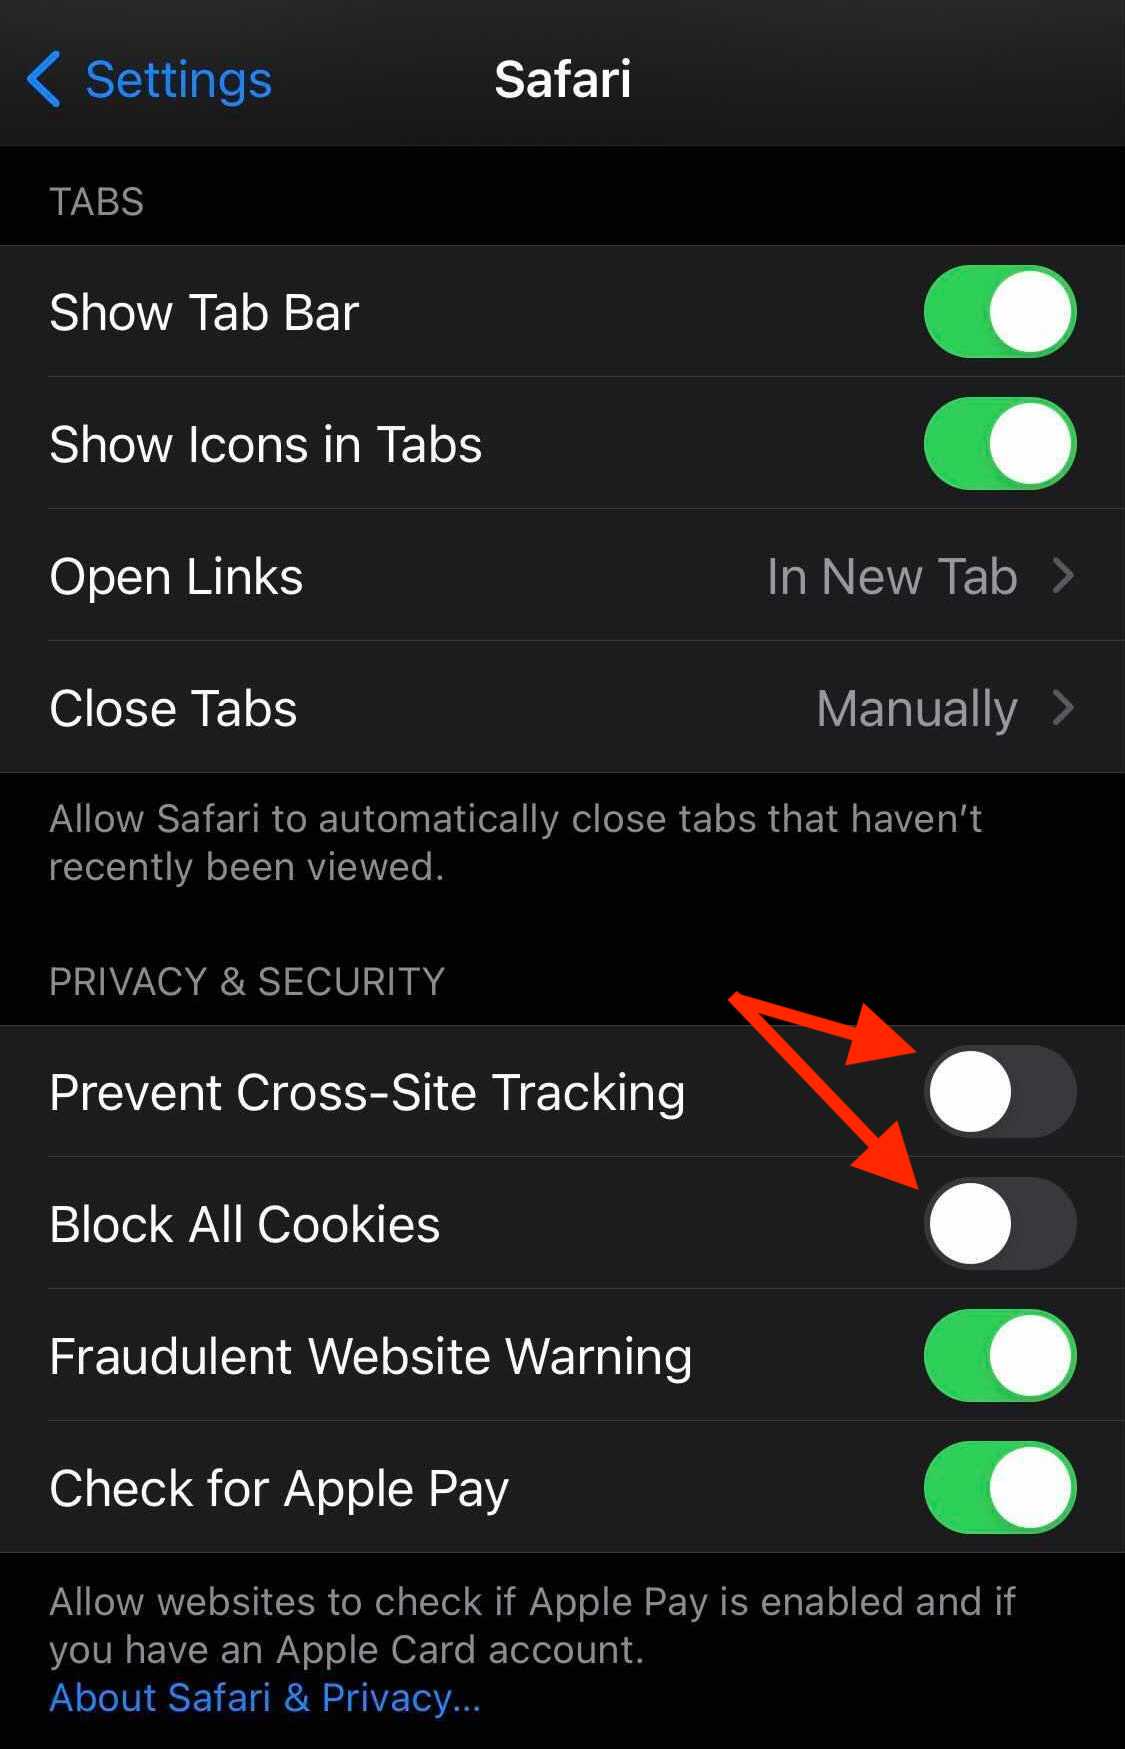 Safari Settings in iOS as described